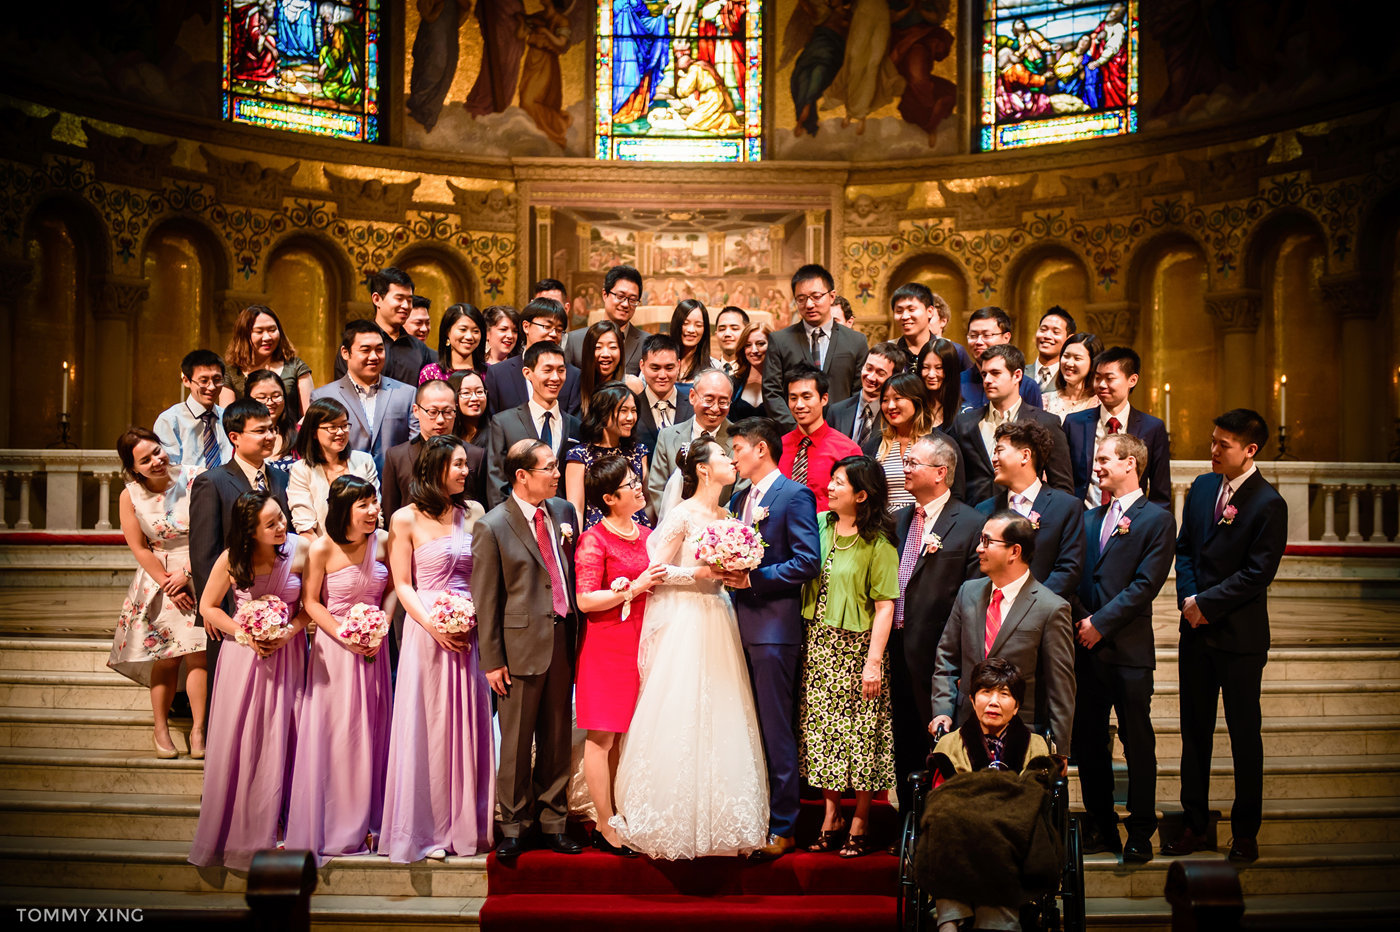 stanford memorial church wedding 旧金山湾区斯坦福教堂婚礼 Tommy Xing Photography 094.jpg